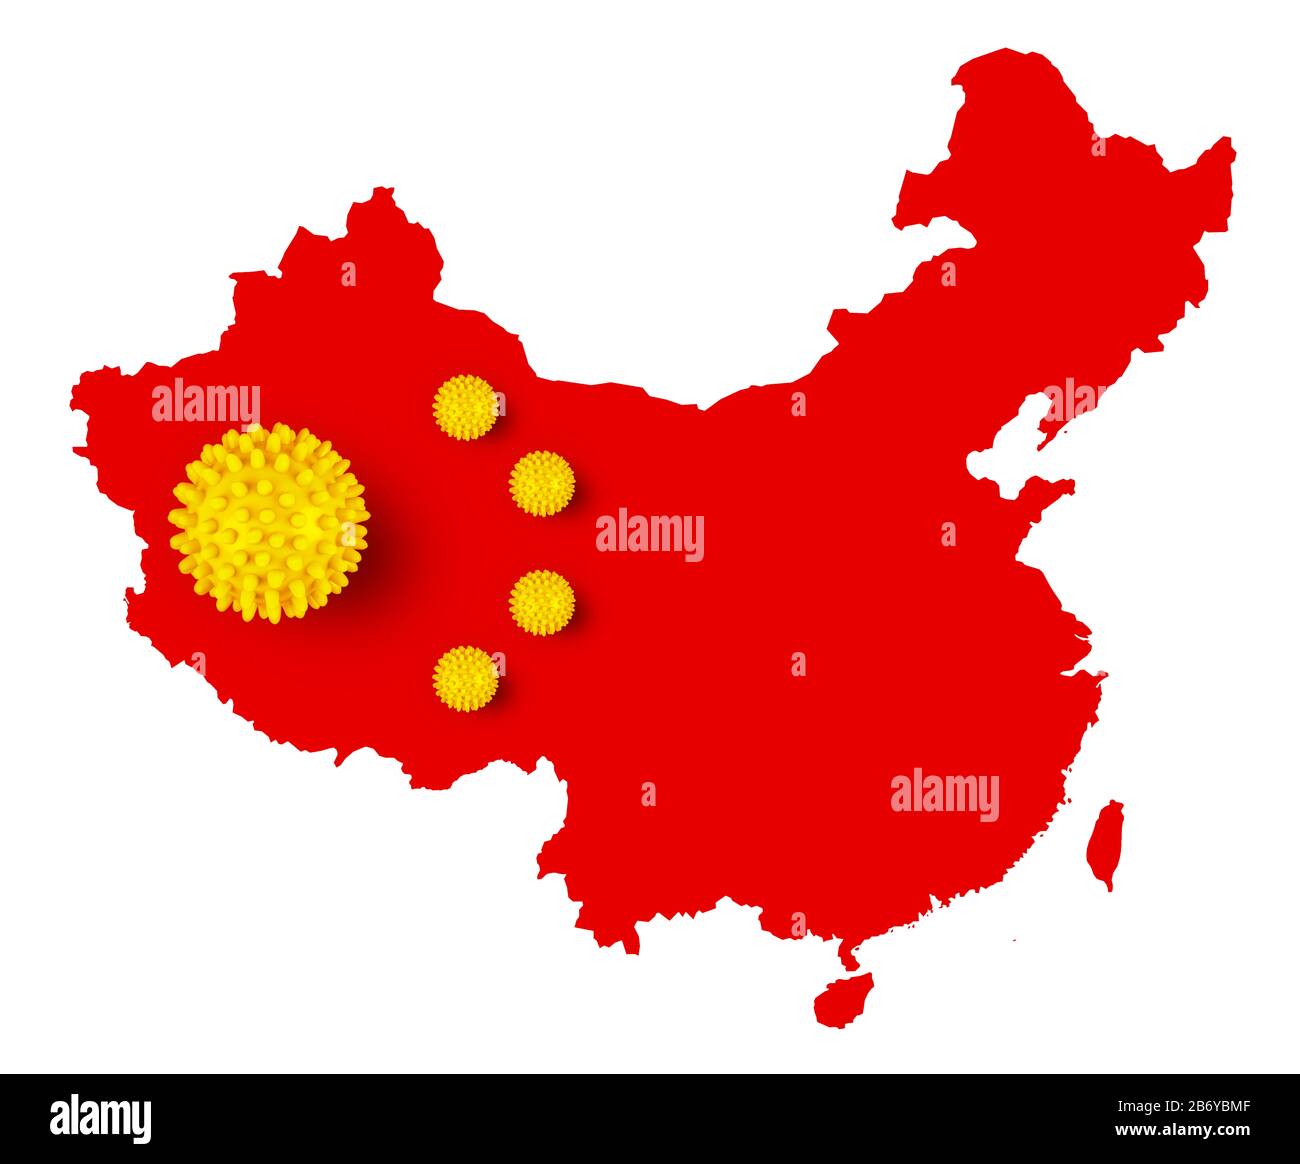 Corona-Virus-Symbol auf rot gelbem chinesischen Kartenfahne china Hintergrund. Cornavirus COVID-19 globales Konzept zur epidemischen Epidemie bei Ausbruch von Epidemien. Stockfoto